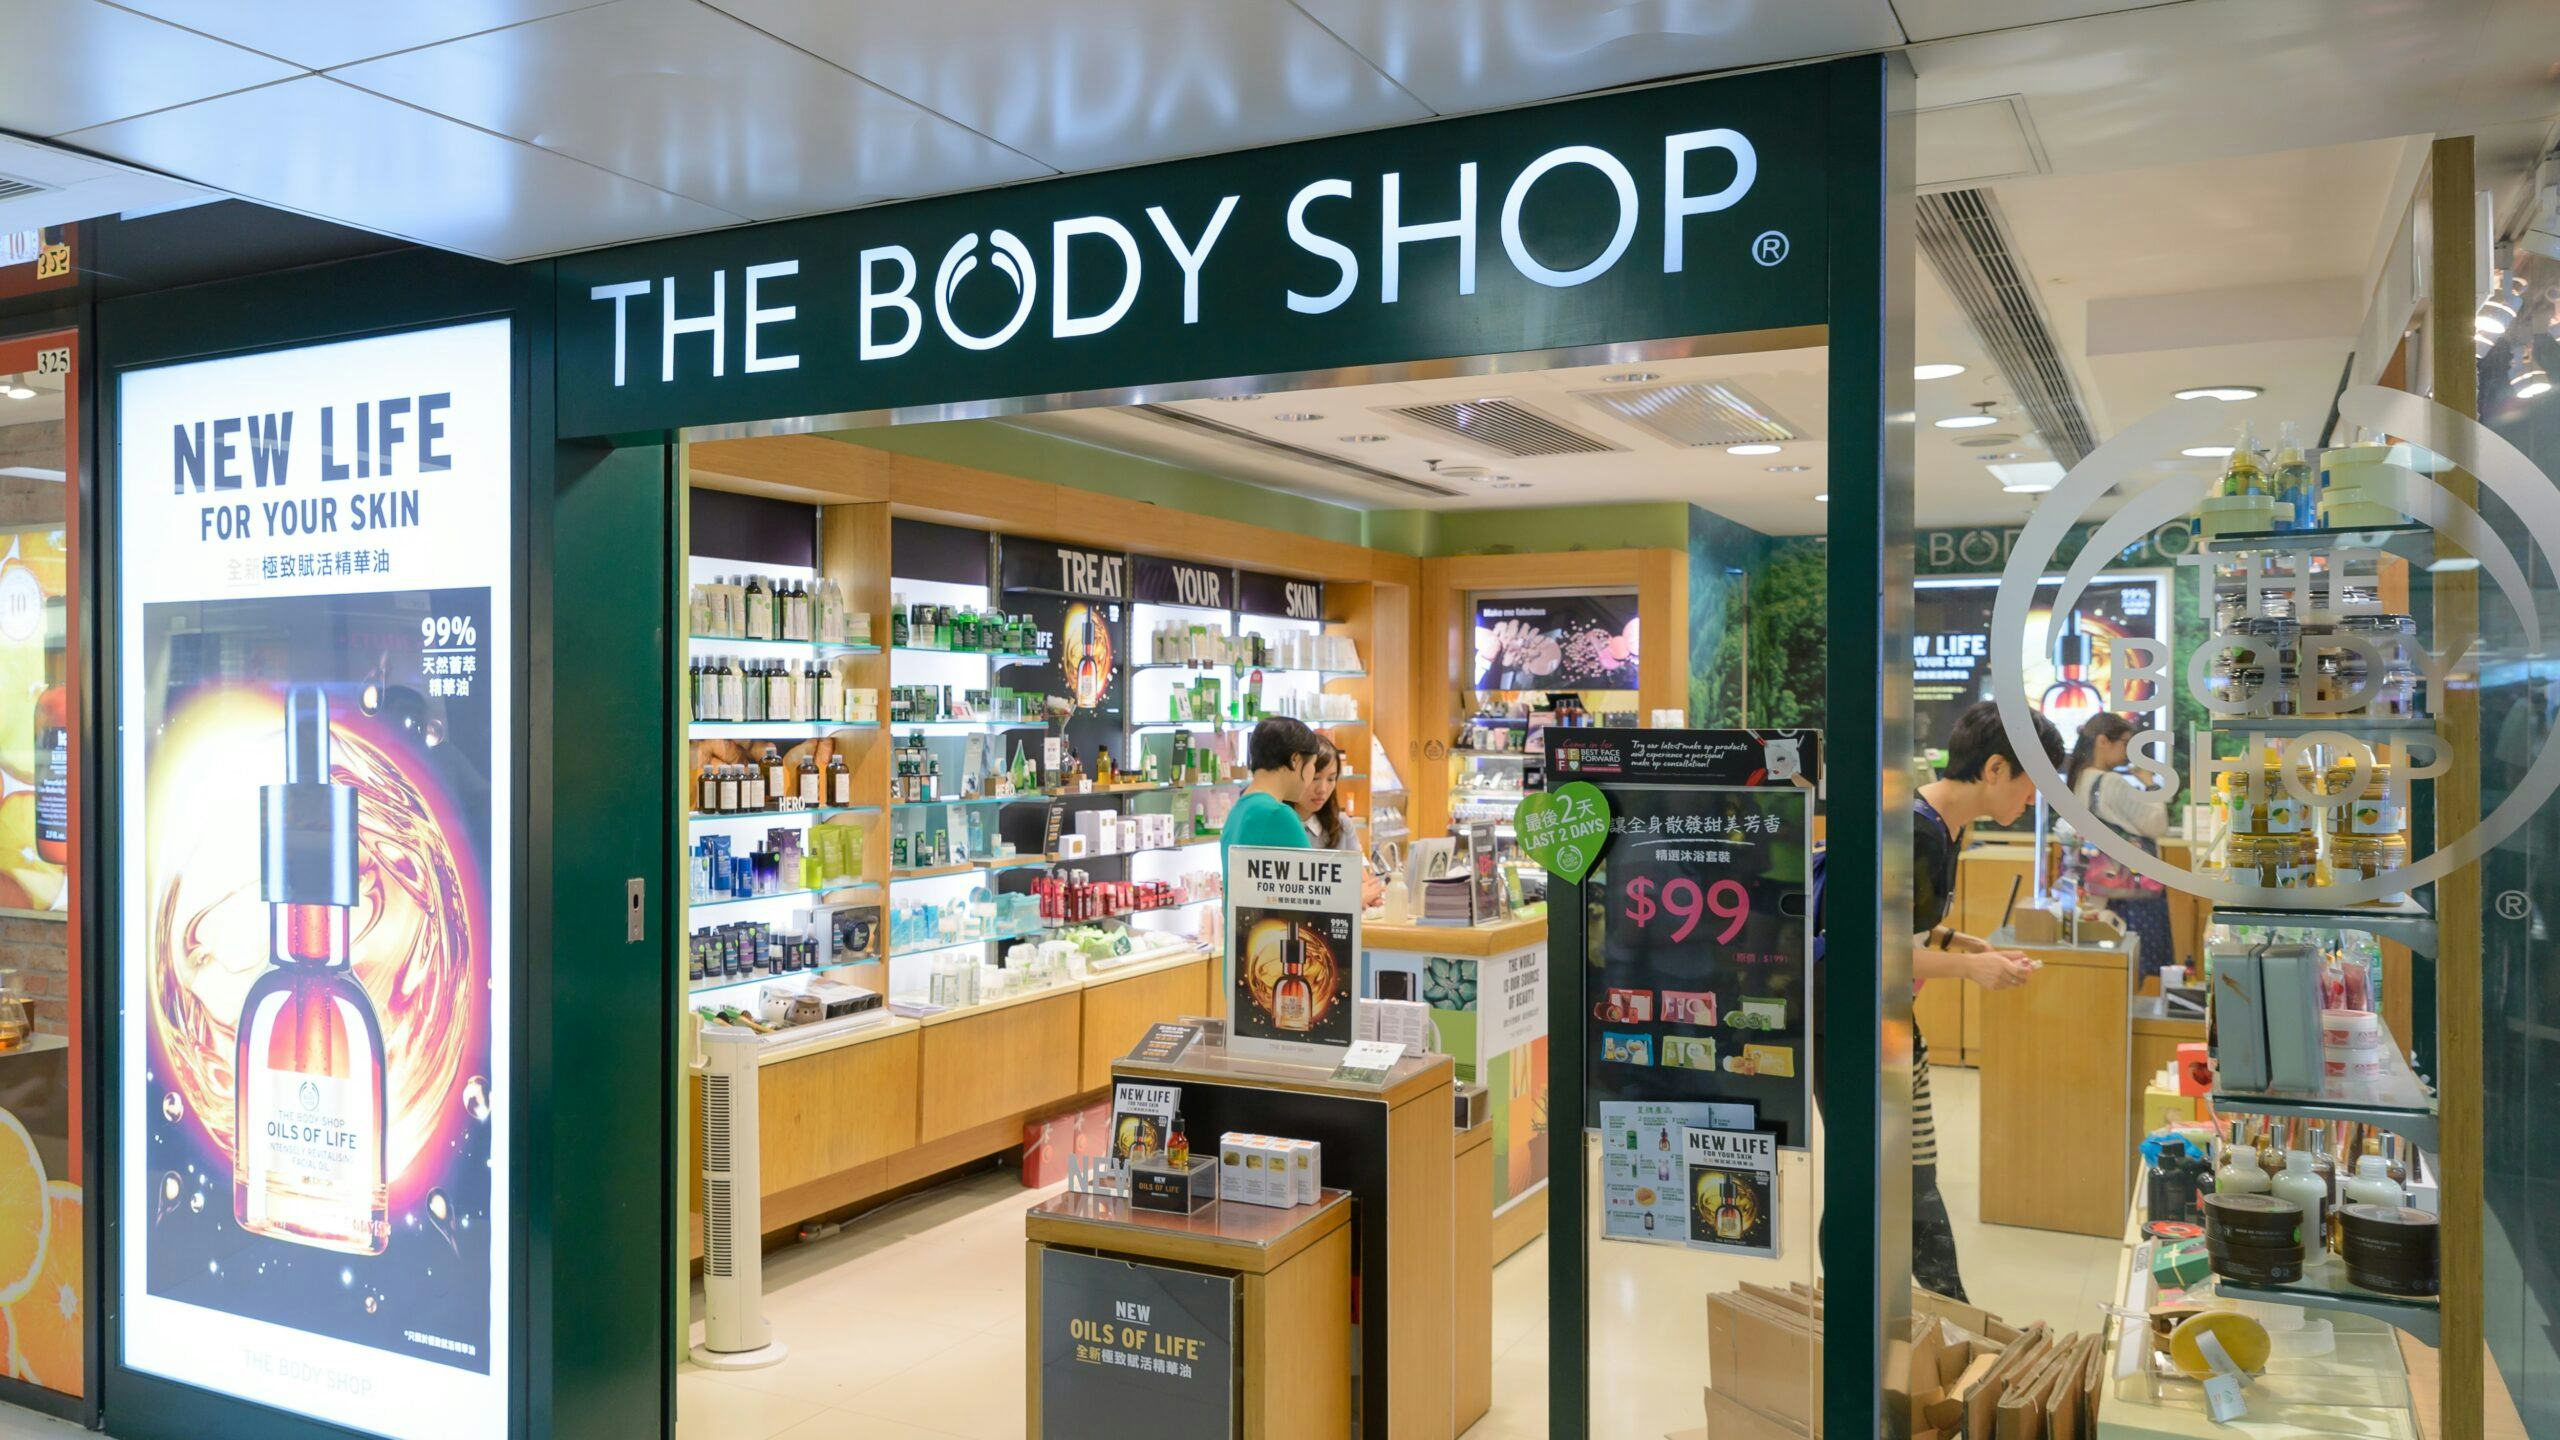 The Body Shop vraagt faillissement aan in buitenland, Nederlandse webwinkel dicht